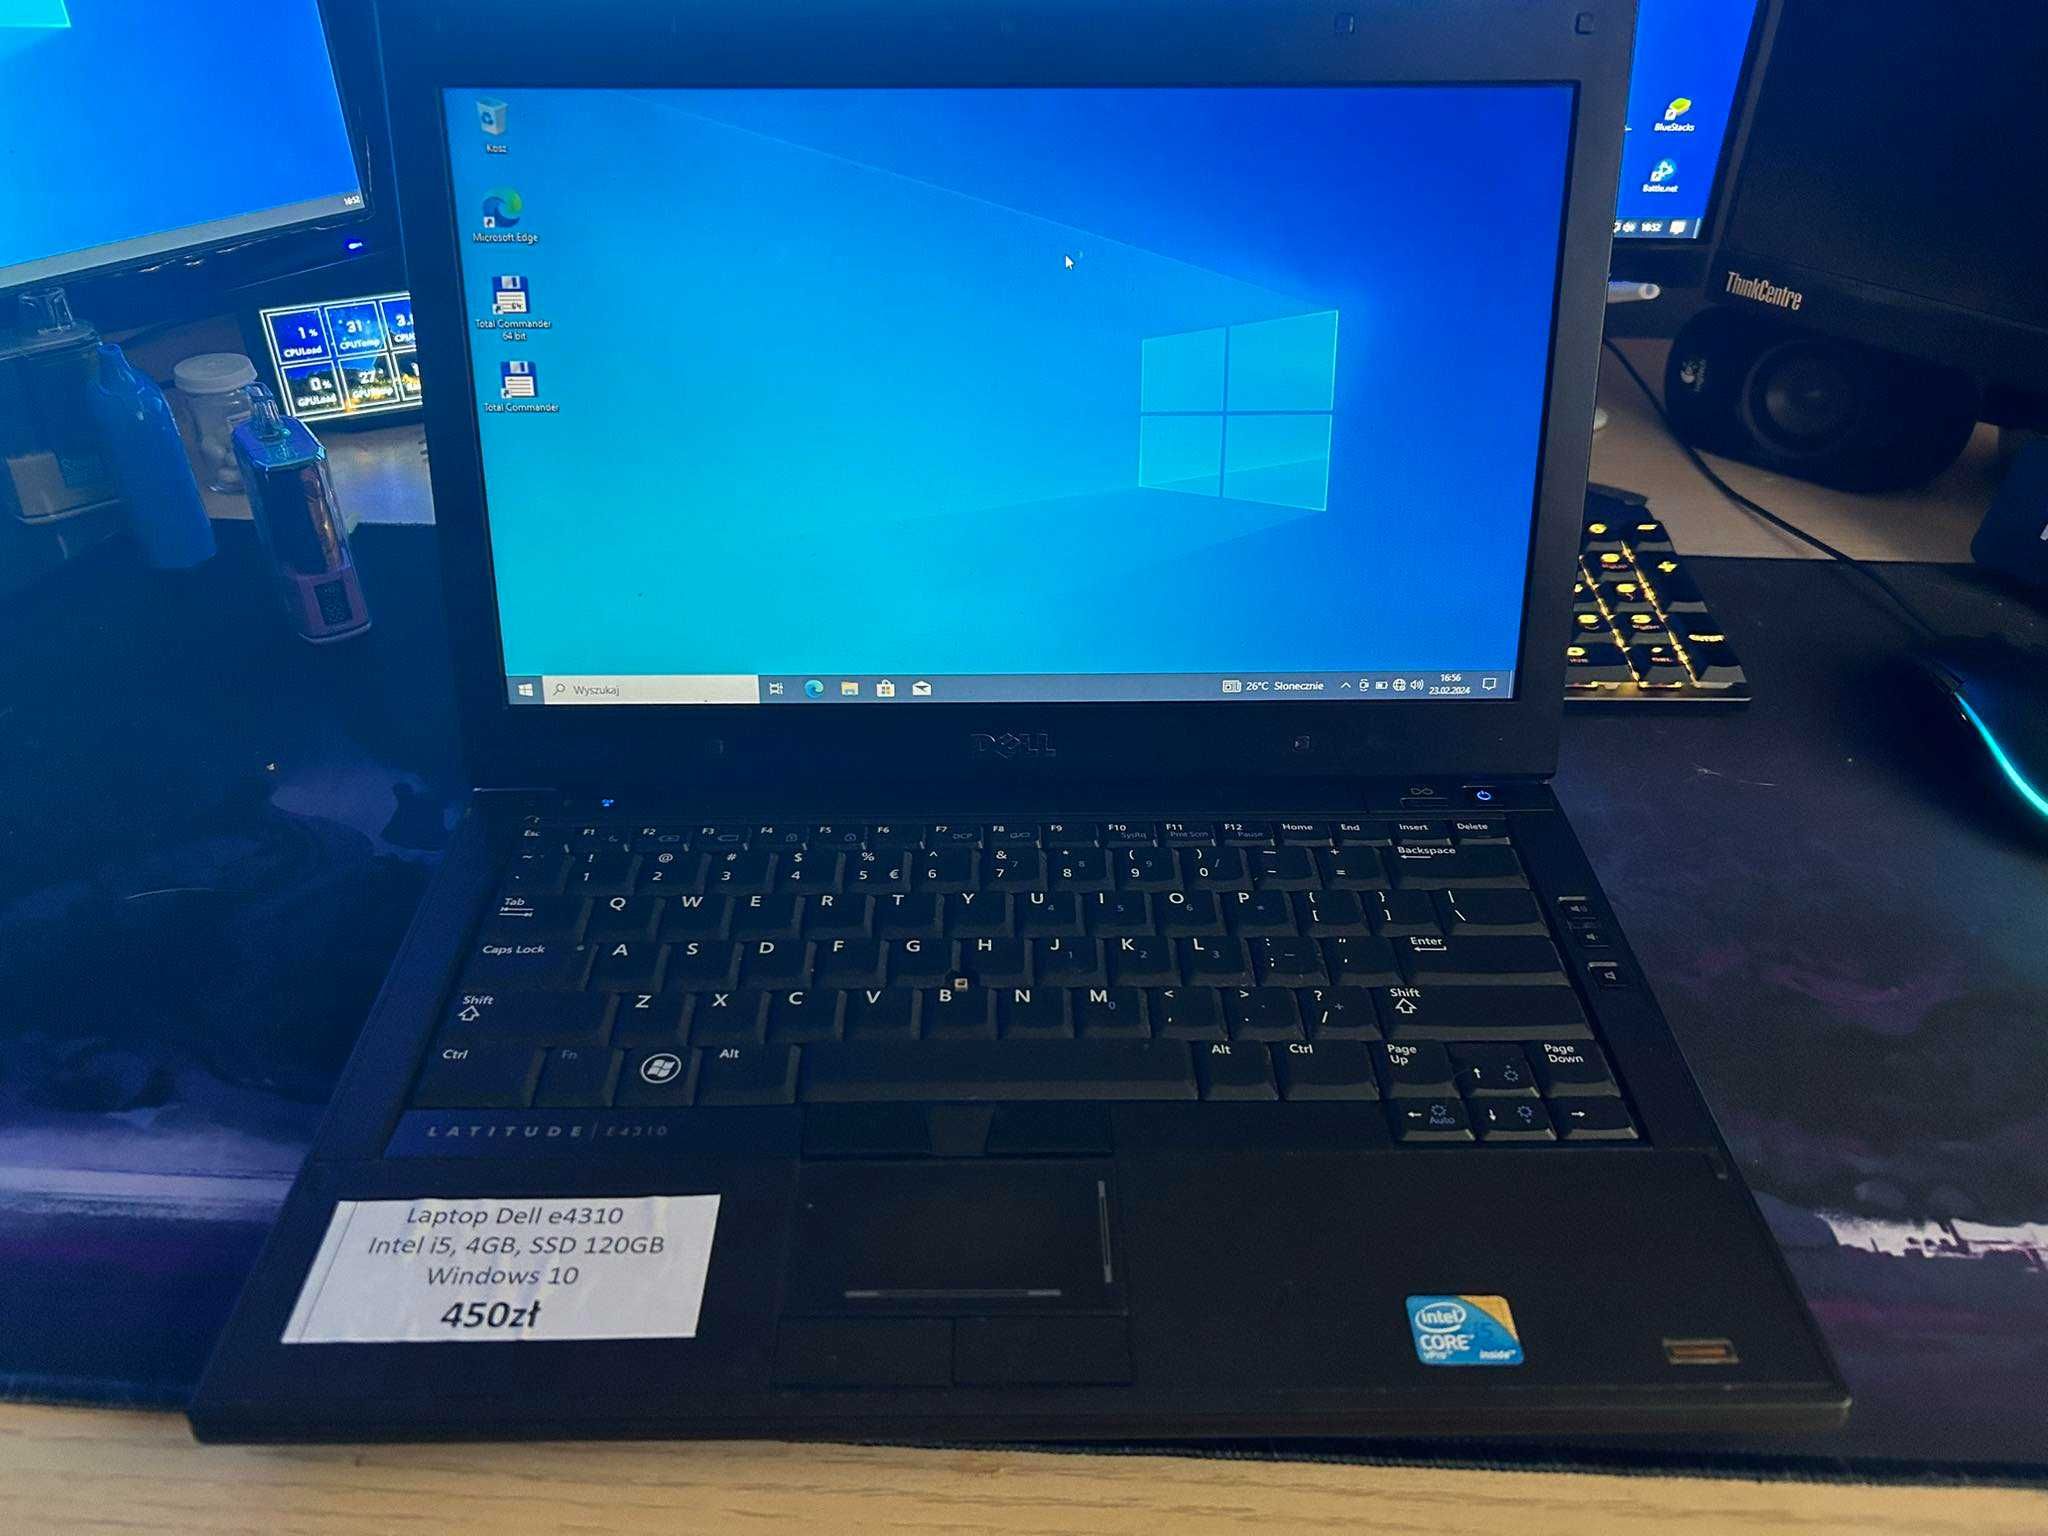 Laptop Dell e4310 i5 pro | 4GB | SSD | 13'' | Windows 10